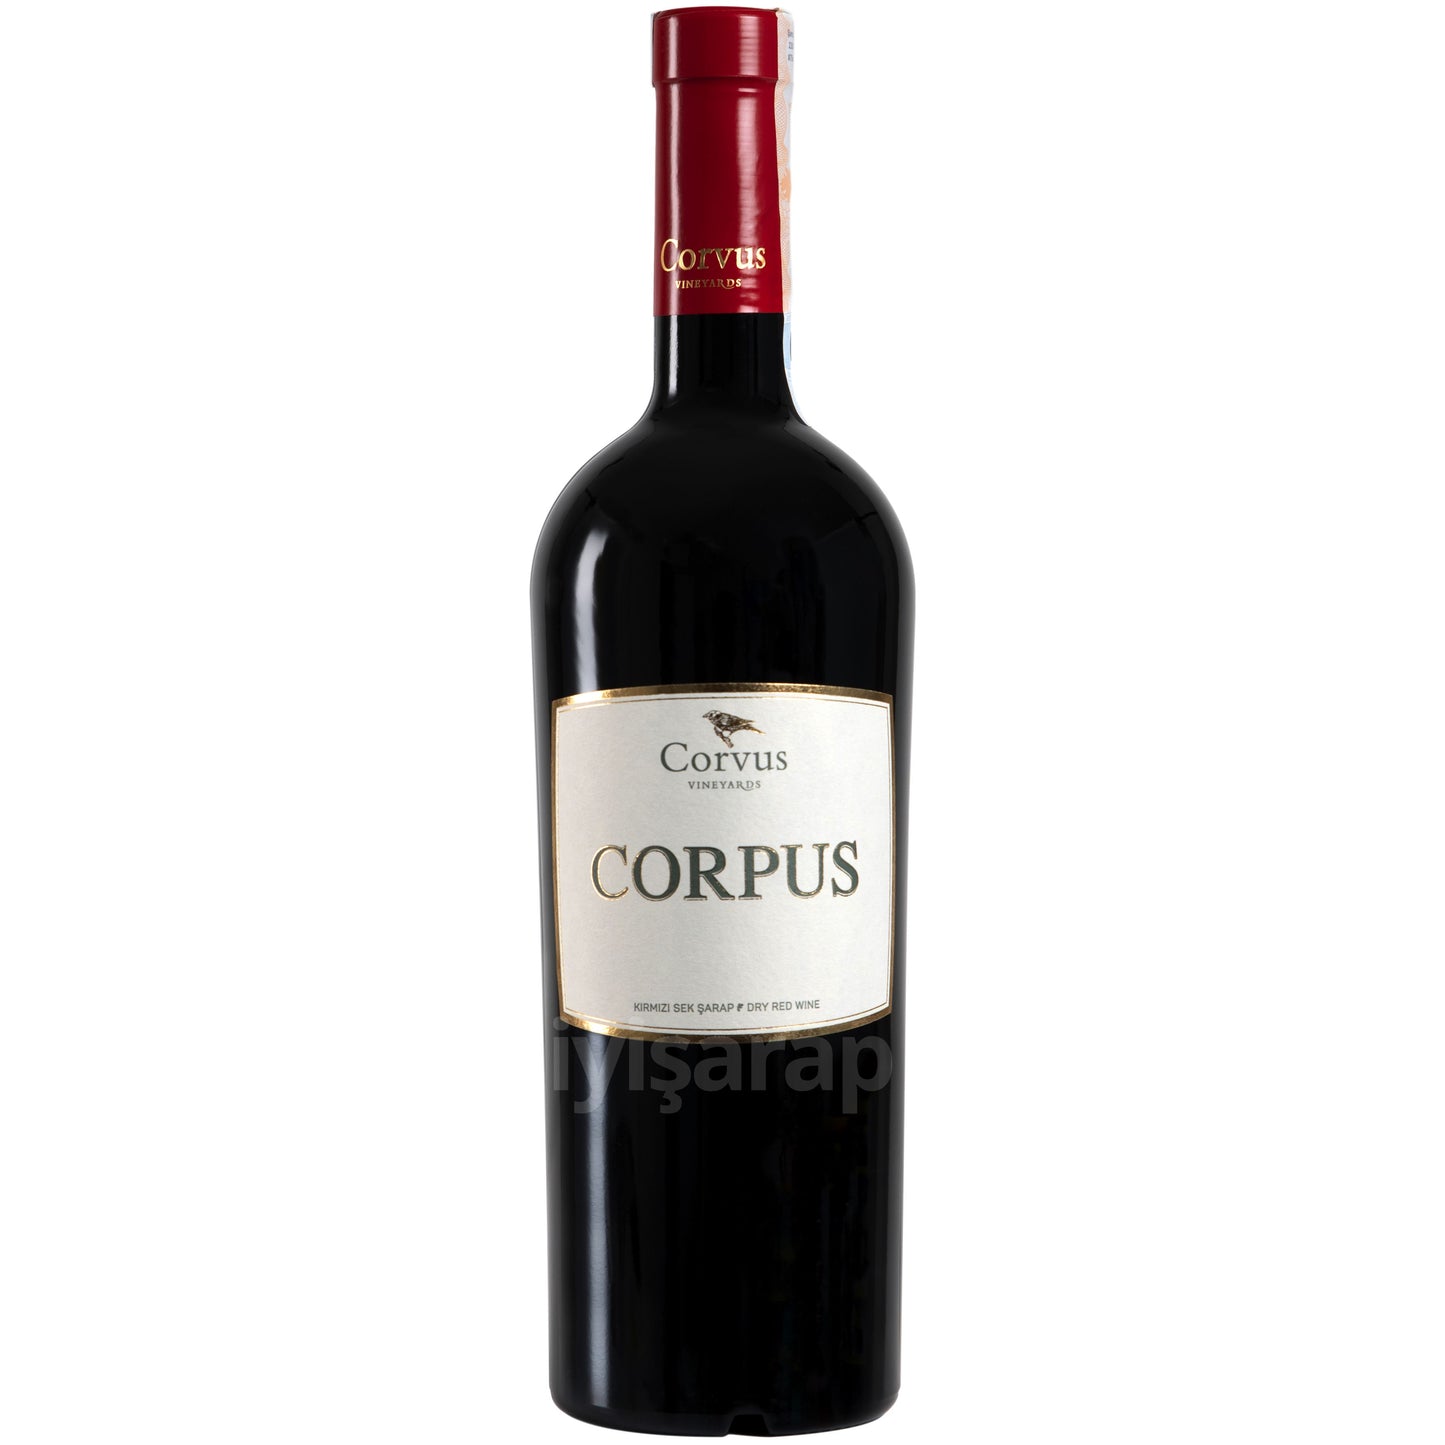 Corvus Corpus